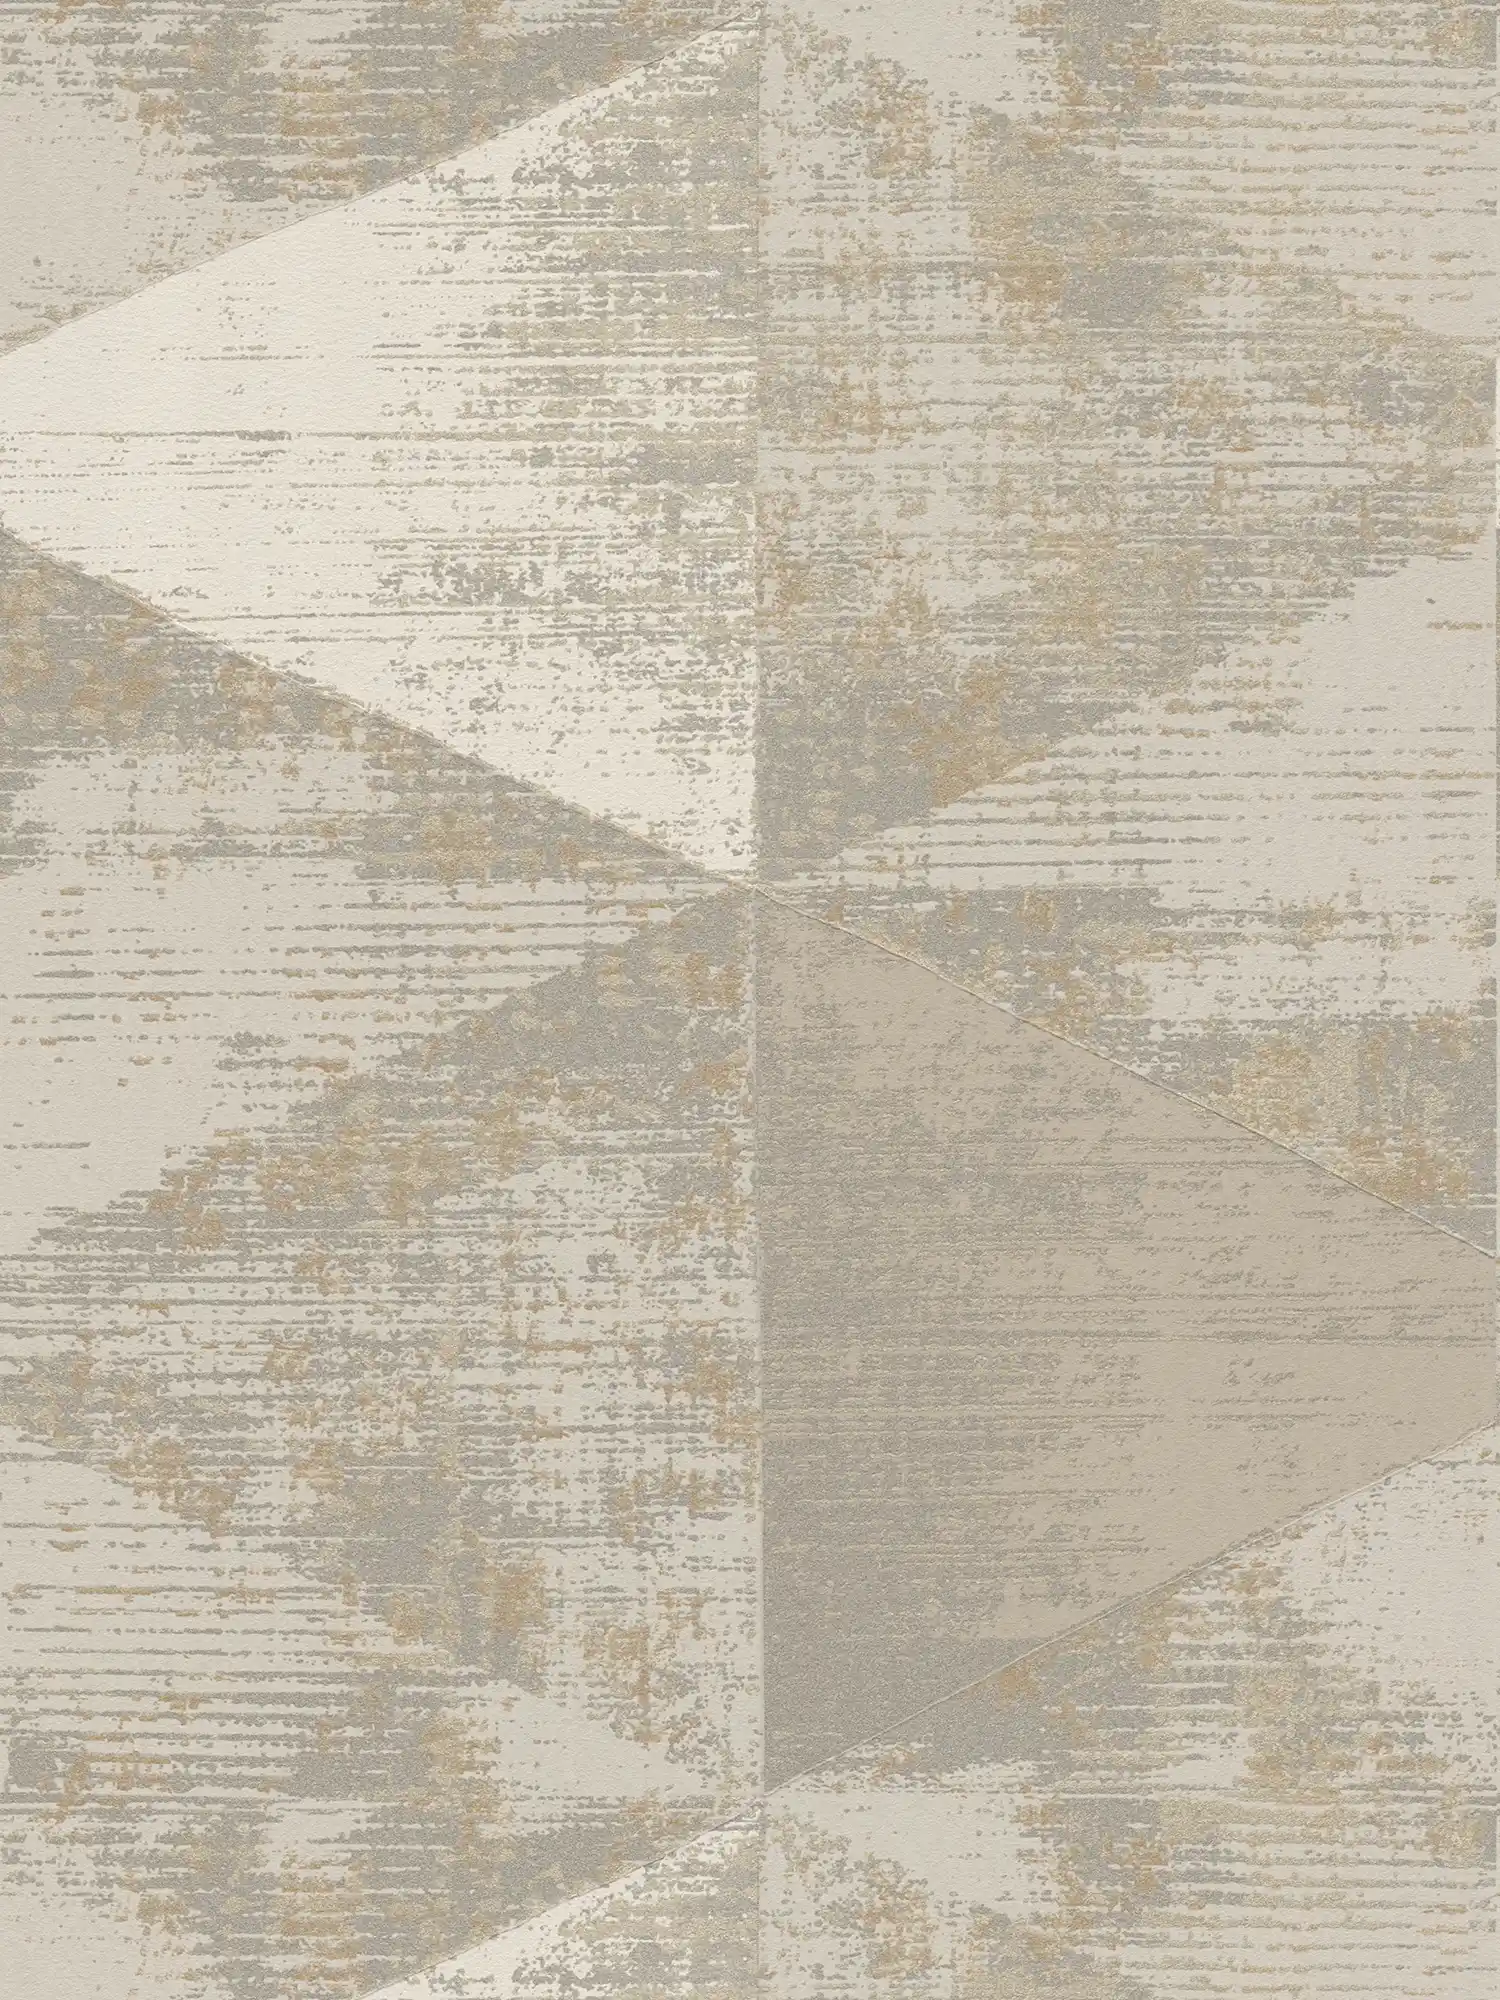         Wallpaper industrial style with rustic metallic look - metallic, beige, grey
    